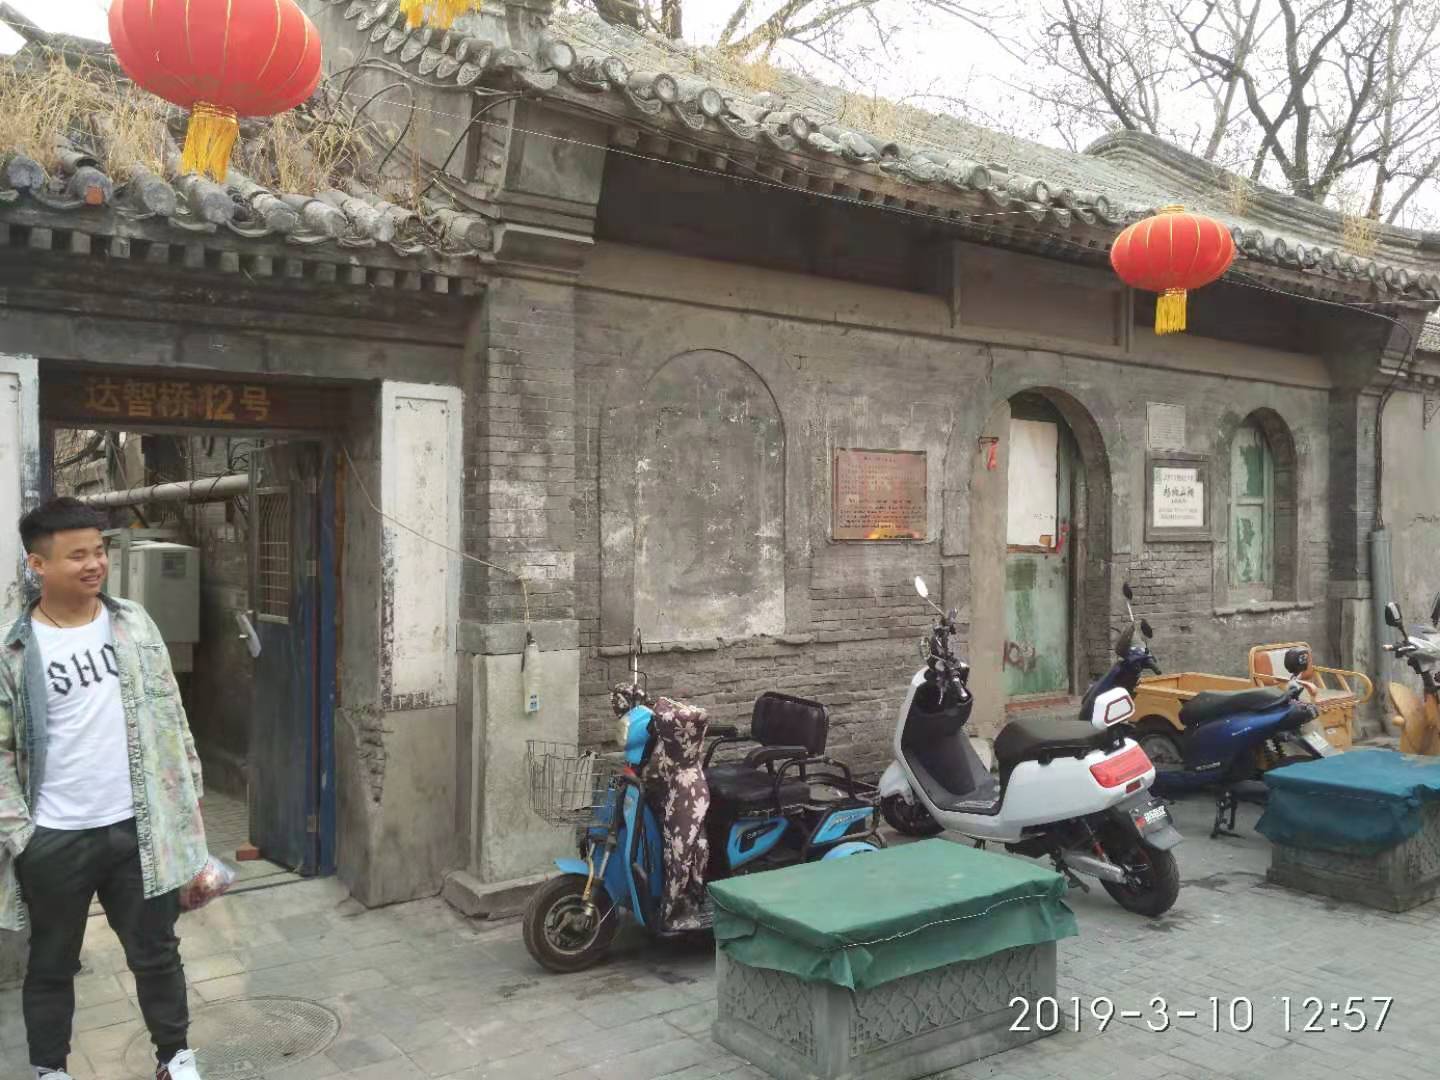 二,杨椒山祠是明代杨继盛的故居,在北京市宣武区达智桥胡同12号